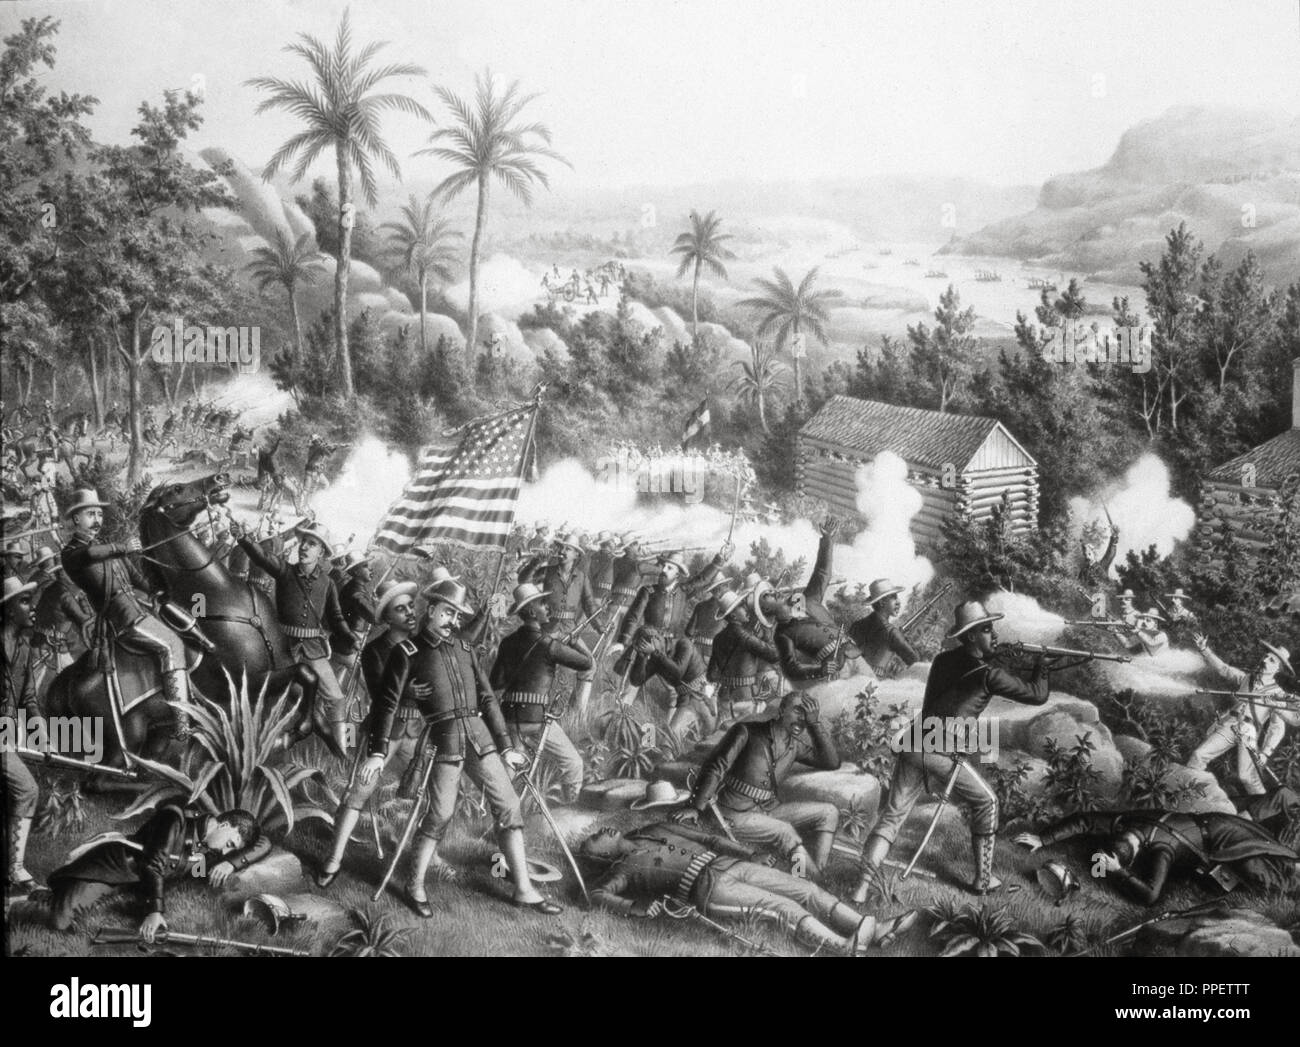 Batalla De Guasimas Fotos e Imágenes de stock - Alamy